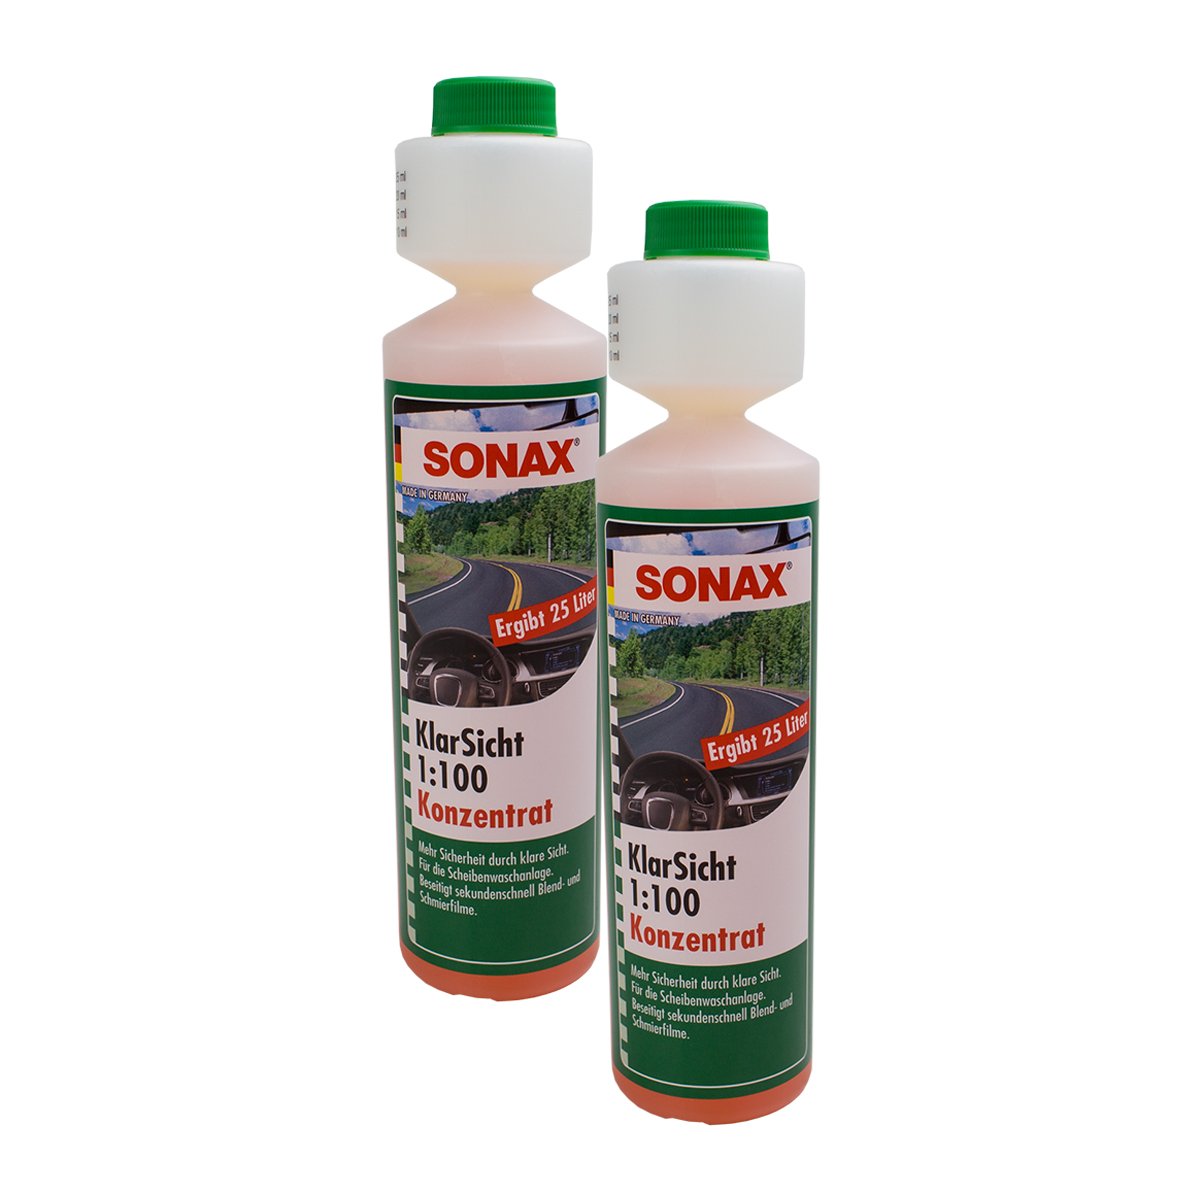 SONAX 2X 03711410 KlarSicht 1:100 Konzentrat ScheibenReiniger 250ml von SONAX